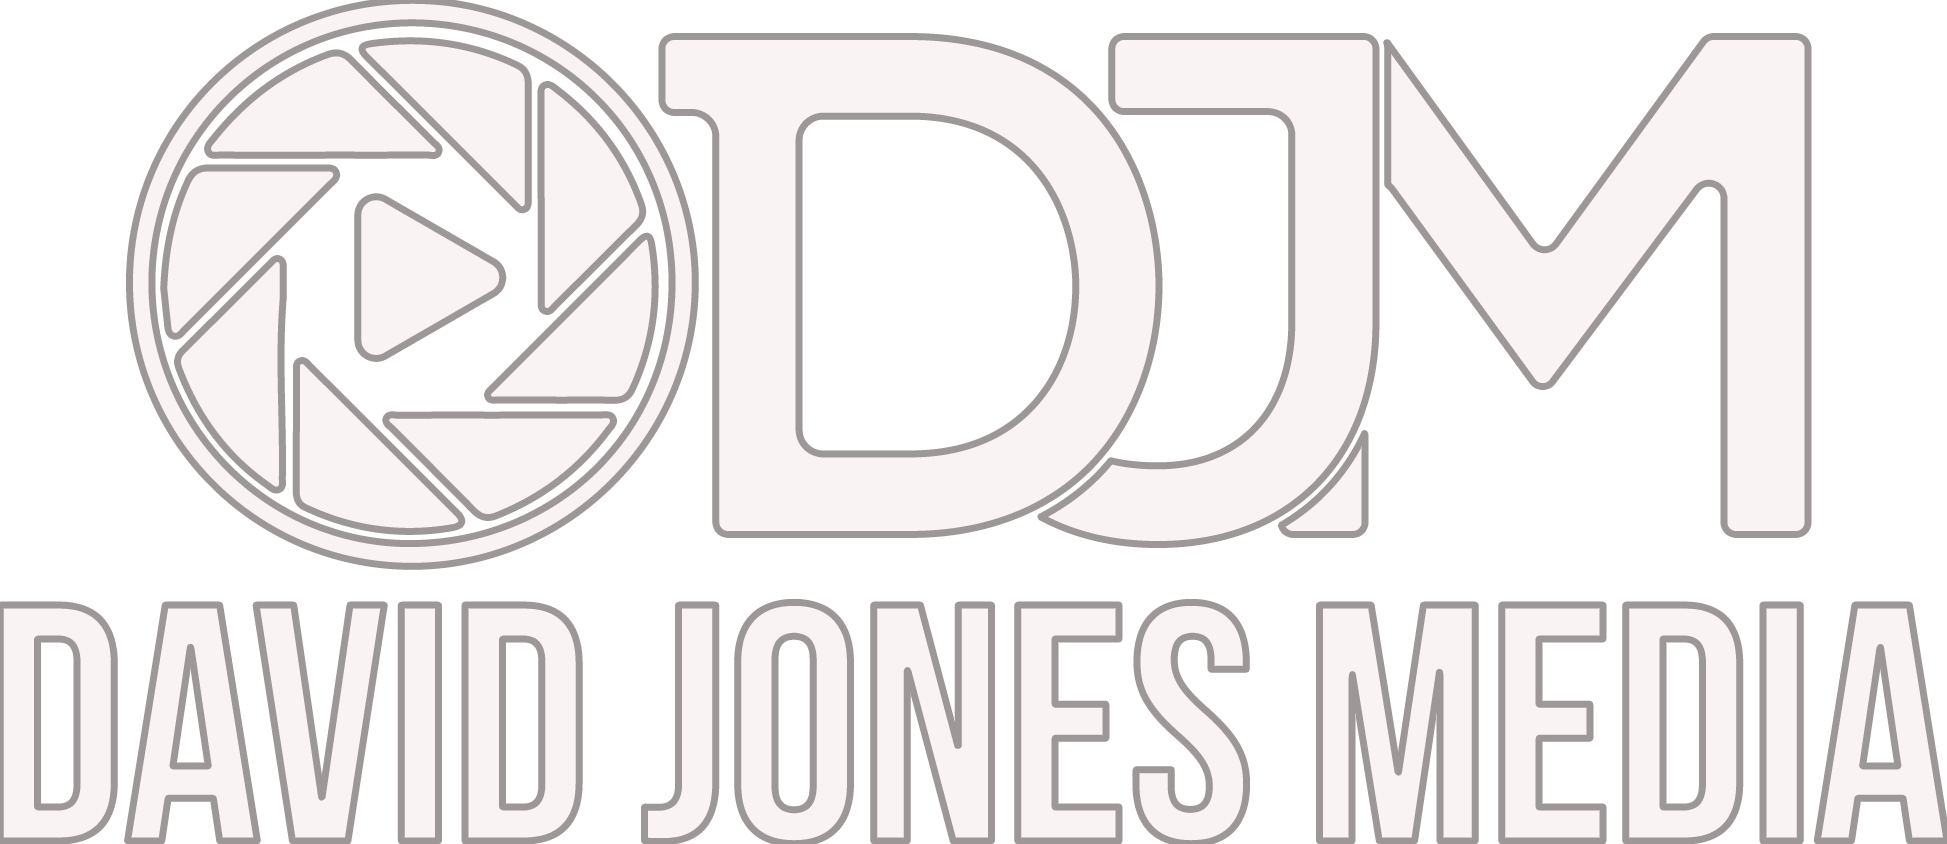 David Jones Logo & Transparent David Jones.PNG Logo Images